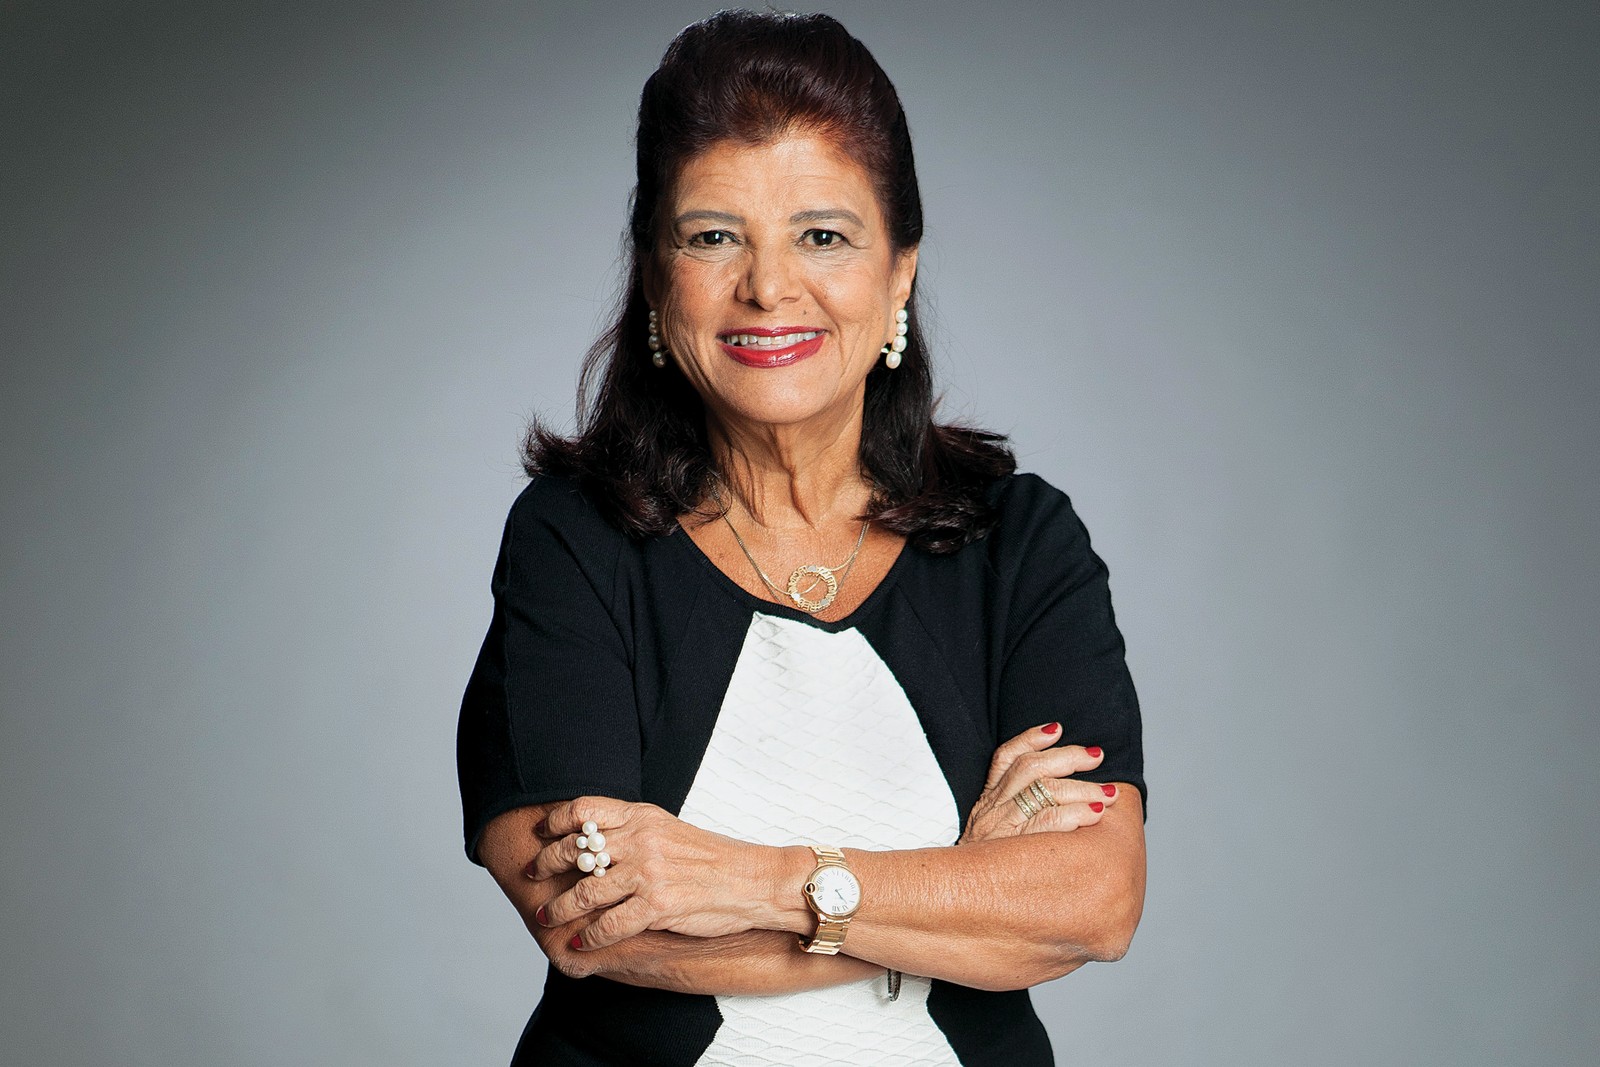 Luiza Helena Trajano, presidente do conselho de administração do Magazine Luiza, ocupa o 5º lugar na lista da Forbes com uma fortuna de US$ 1,4 biAgência O Globo